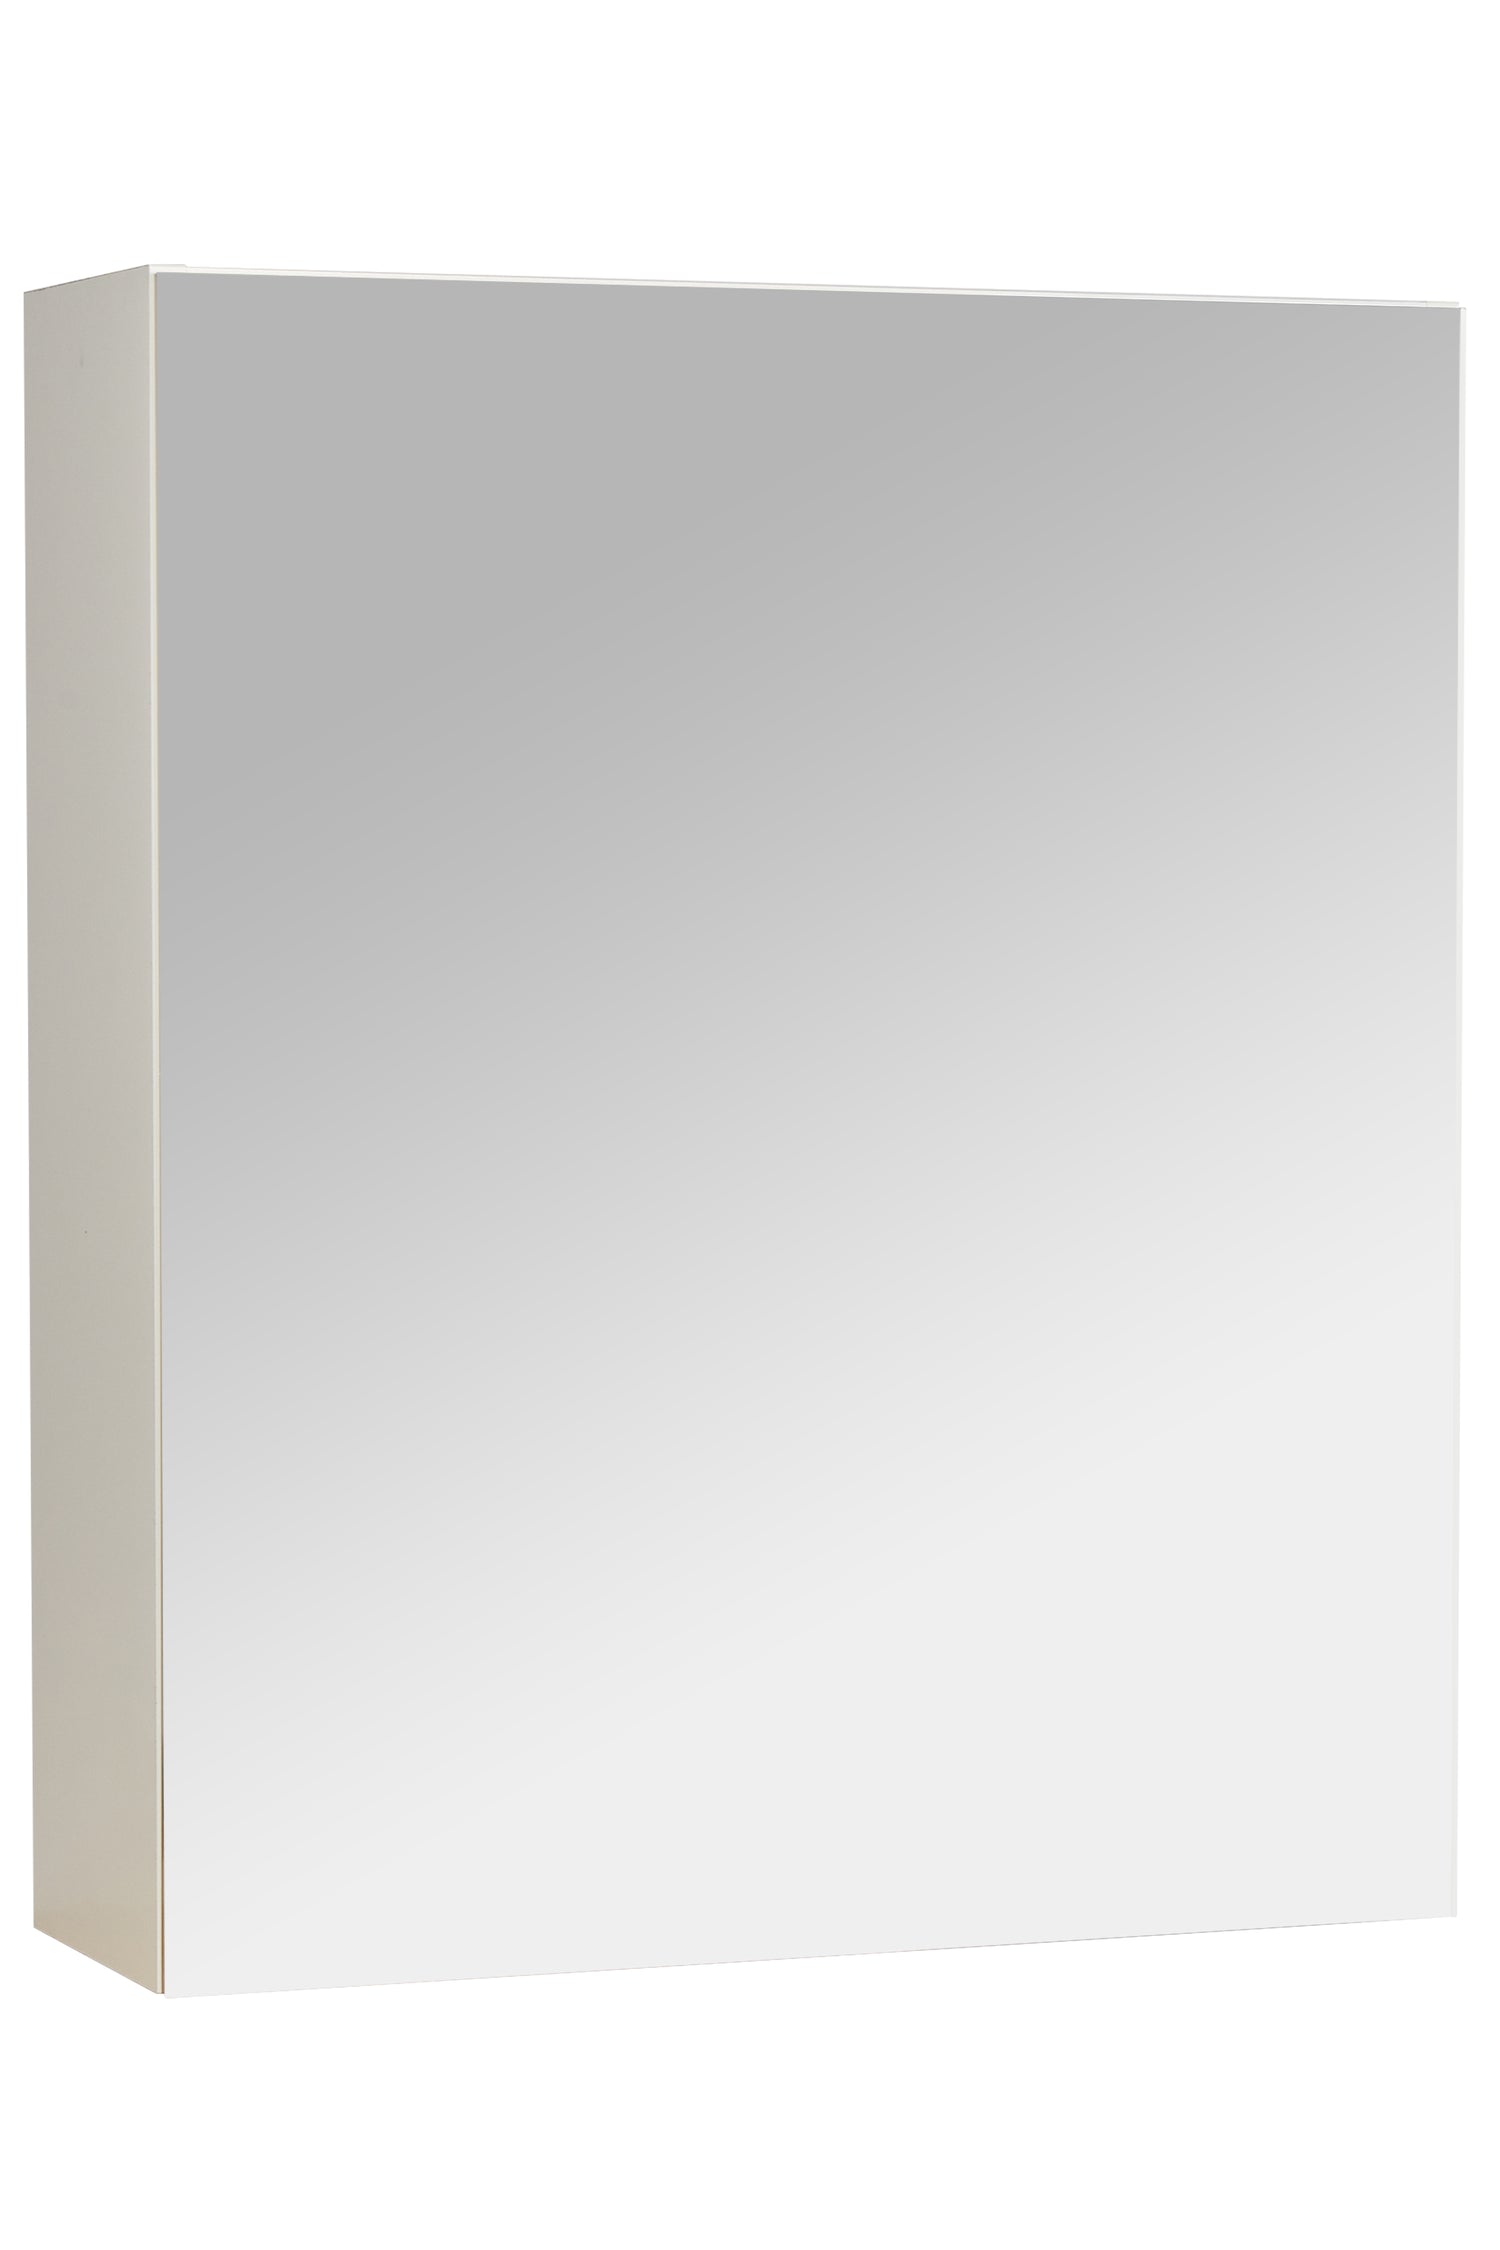 Spiegelschrank 60cm breit nobilia Badezimmerausstattungen